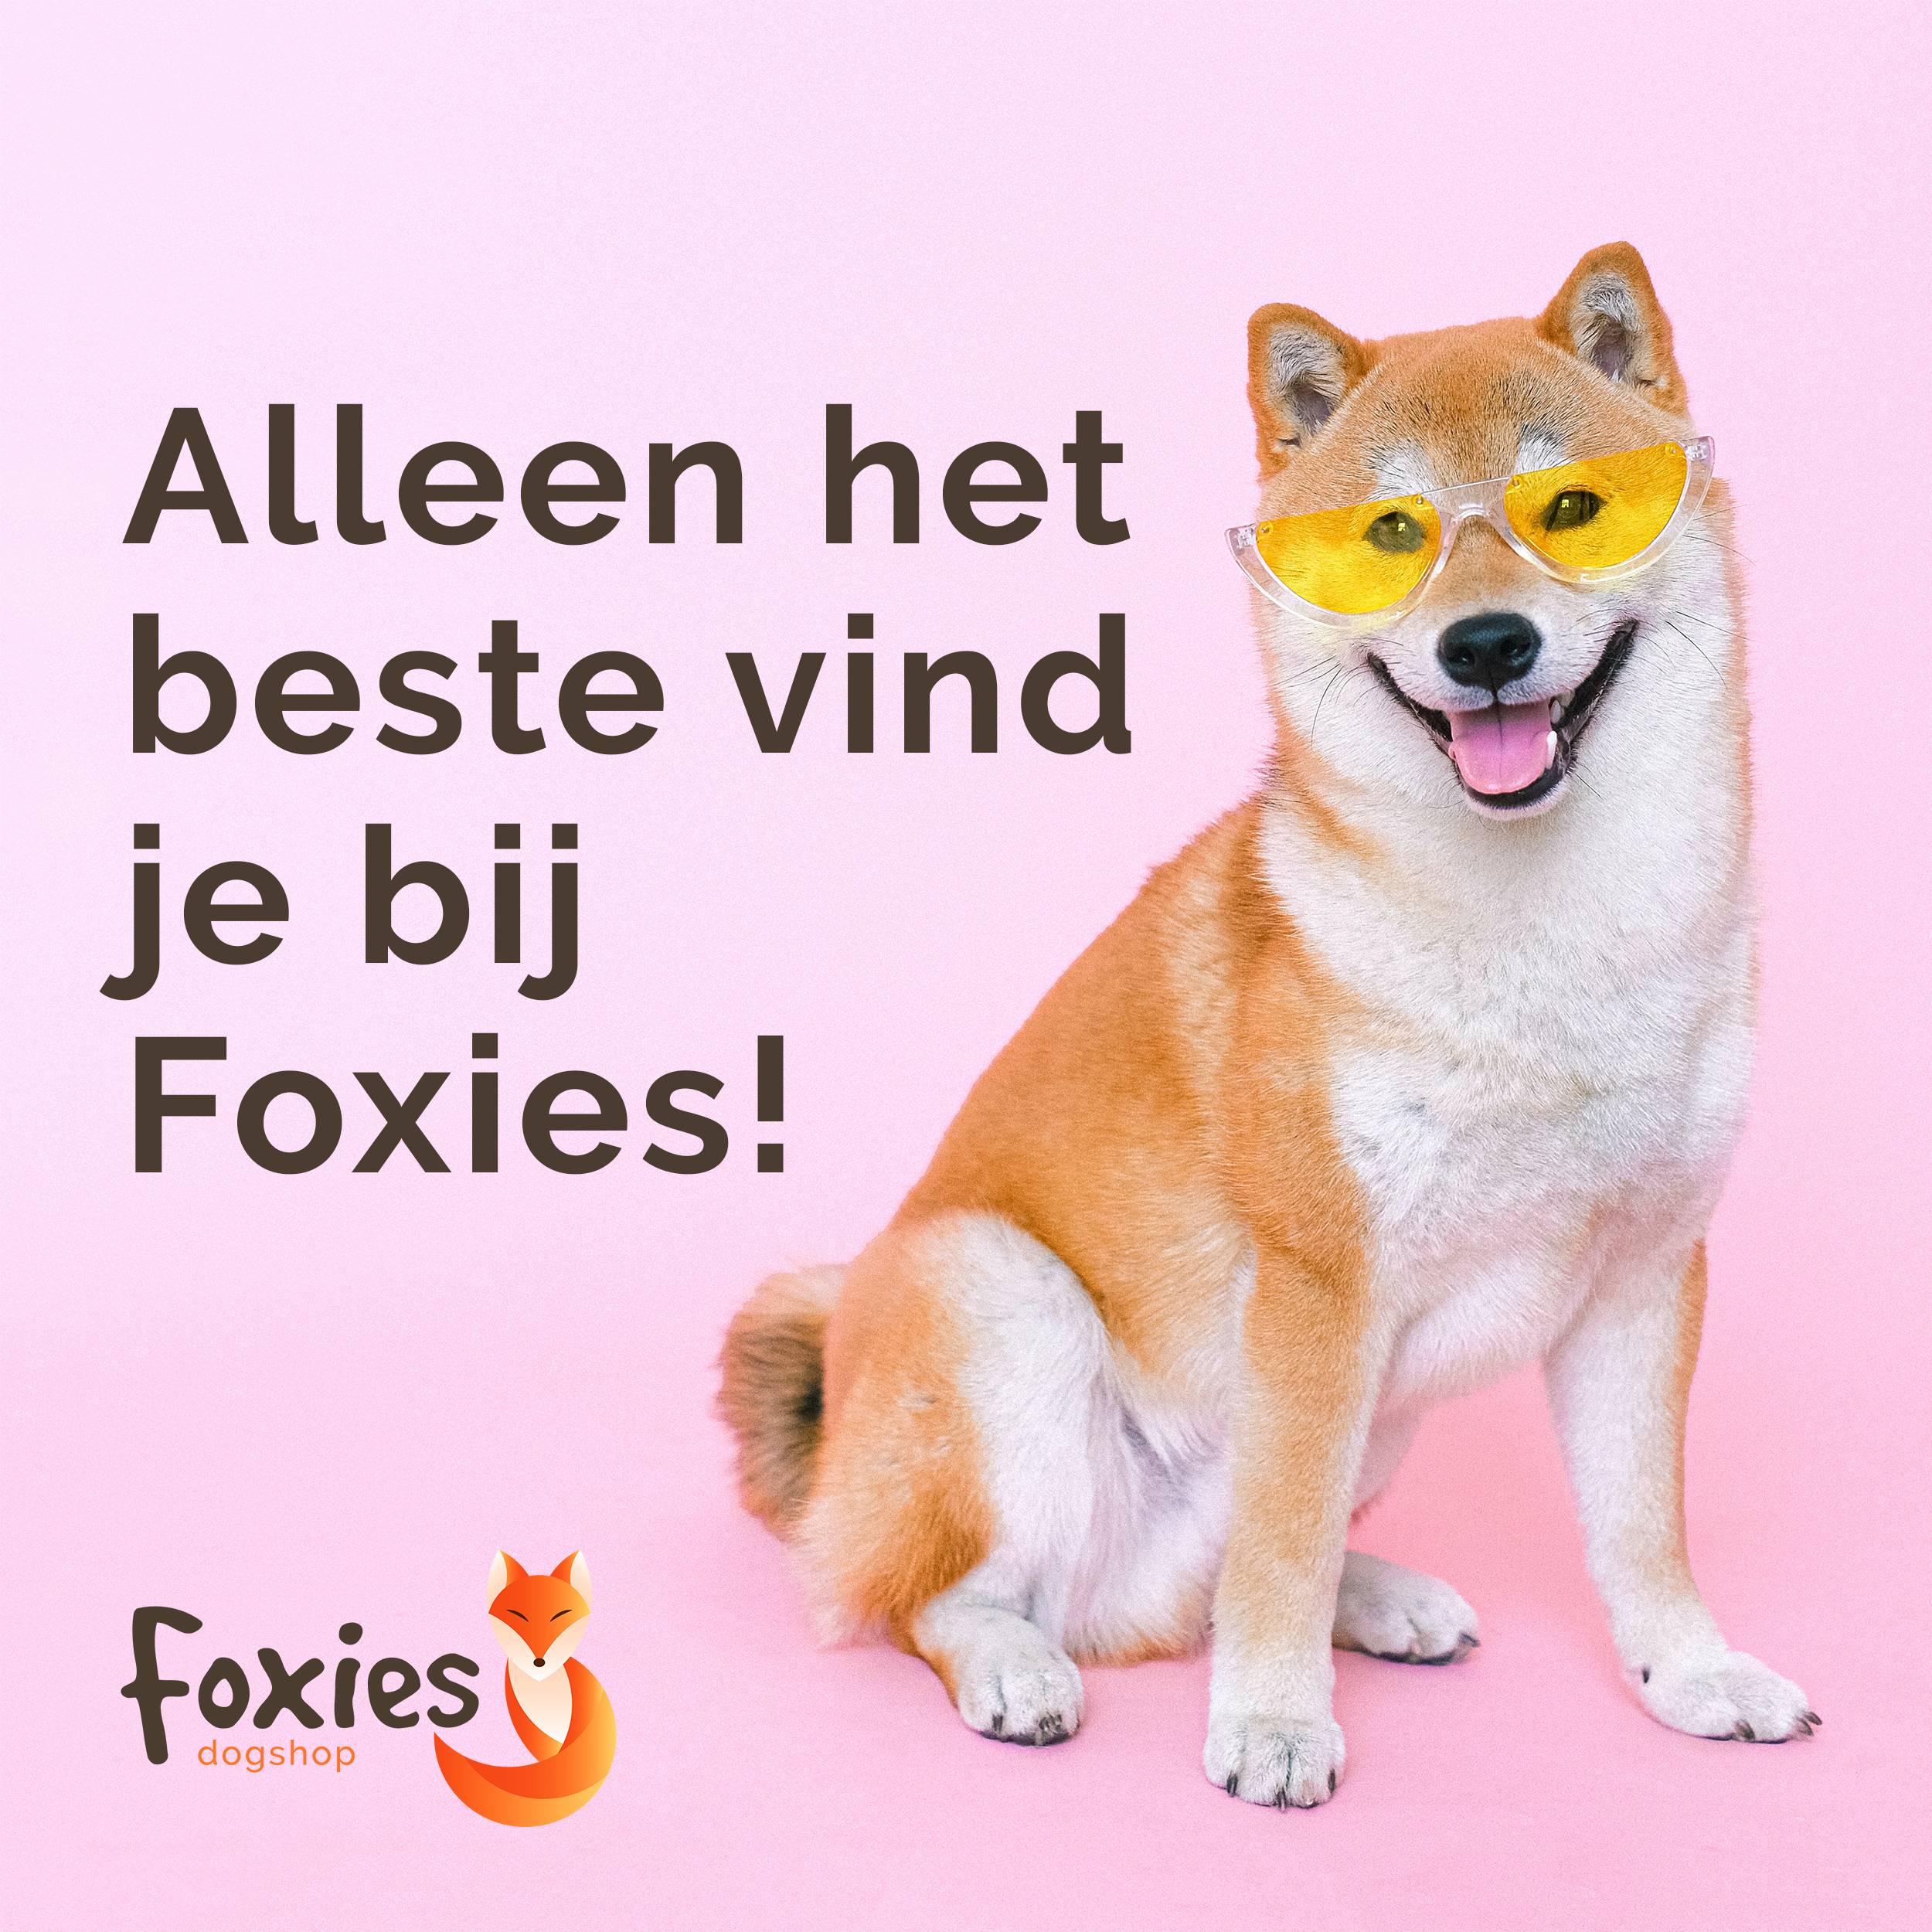 Foxies  dogshop instagram